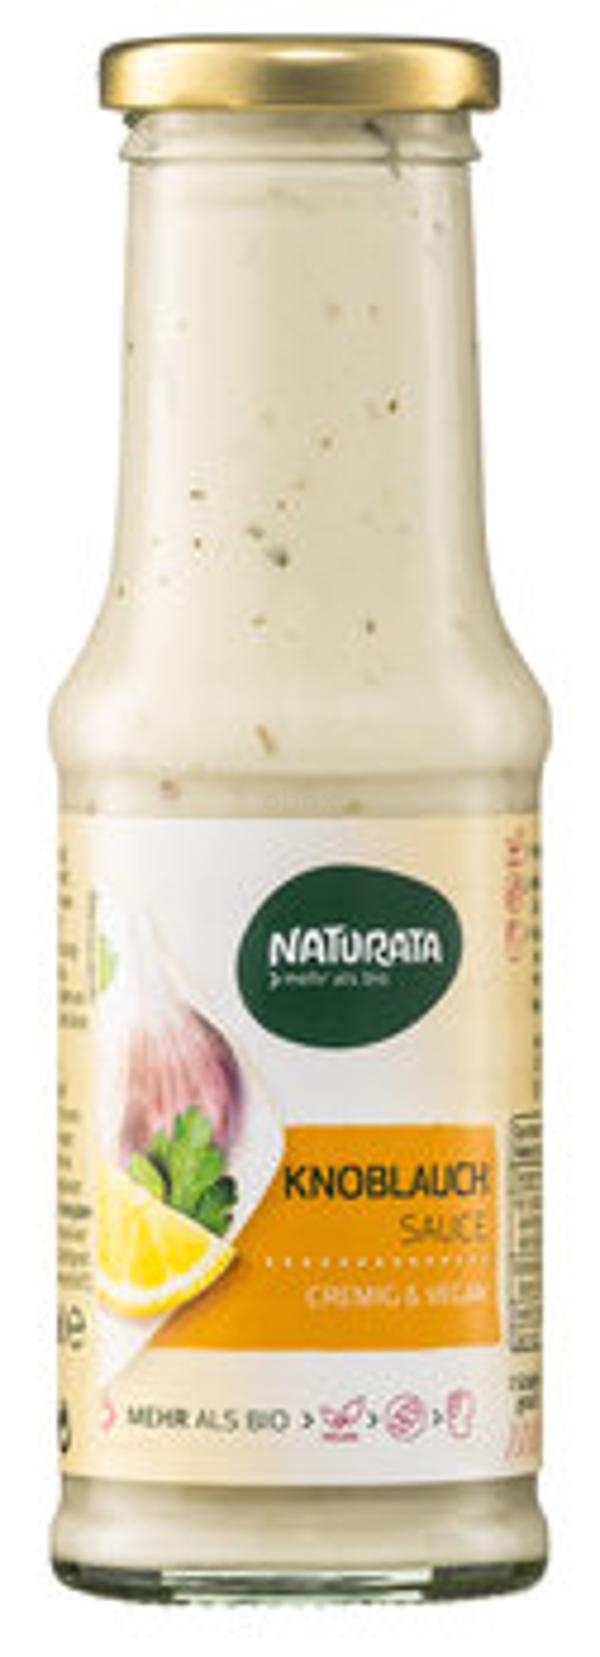 Produktfoto zu Knoblauch Sauce, 210 ml